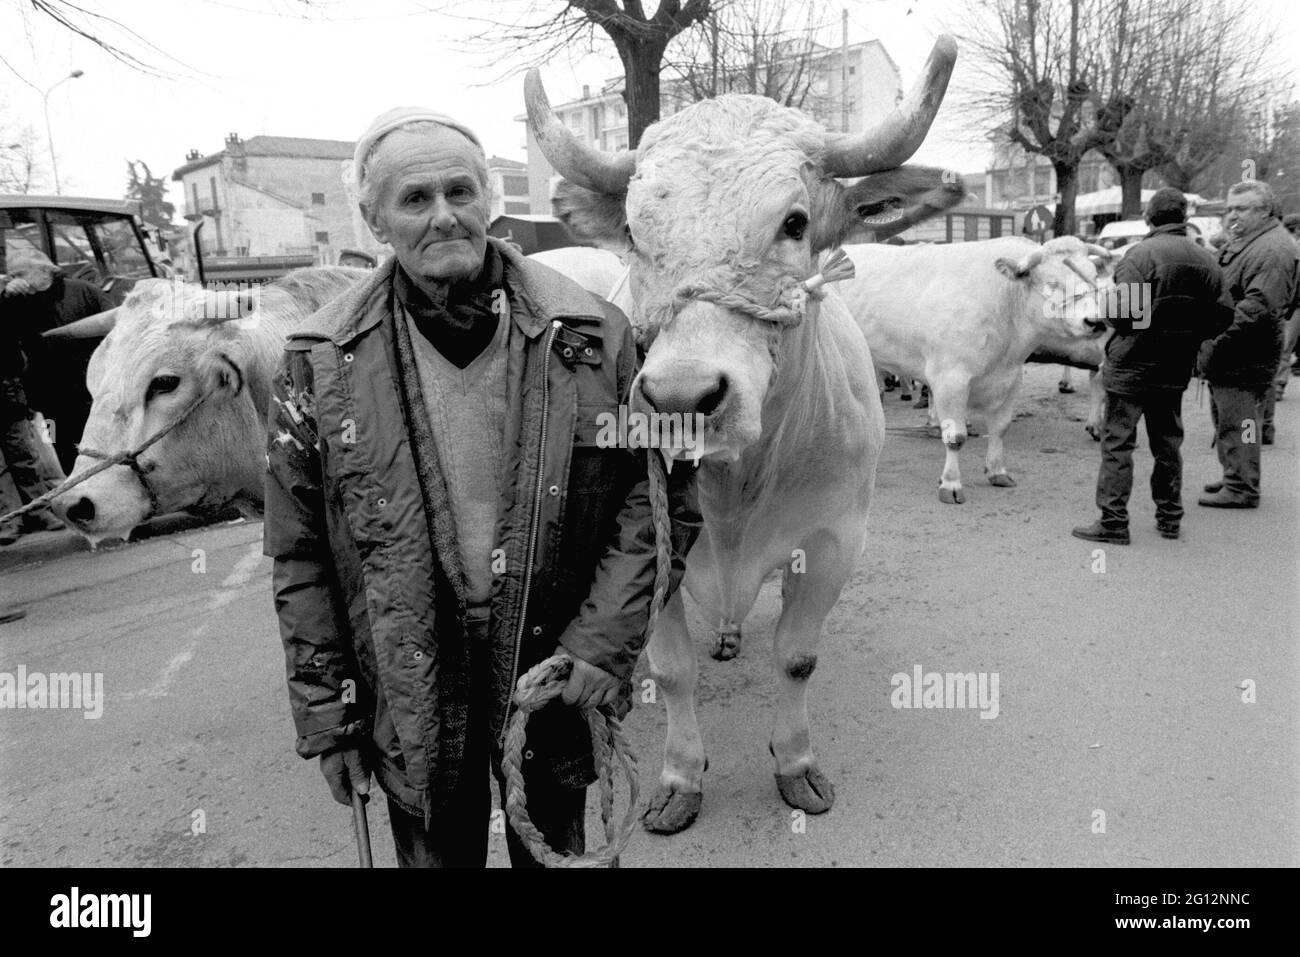 Fête traditionnelle de 'Bue Grasso' (FAT ox) à Carrù (Cuneo, Piémont, Italie), foire de race 'blanc piémontais', l'un des plus anciens animaux d'Italie Banque D'Images